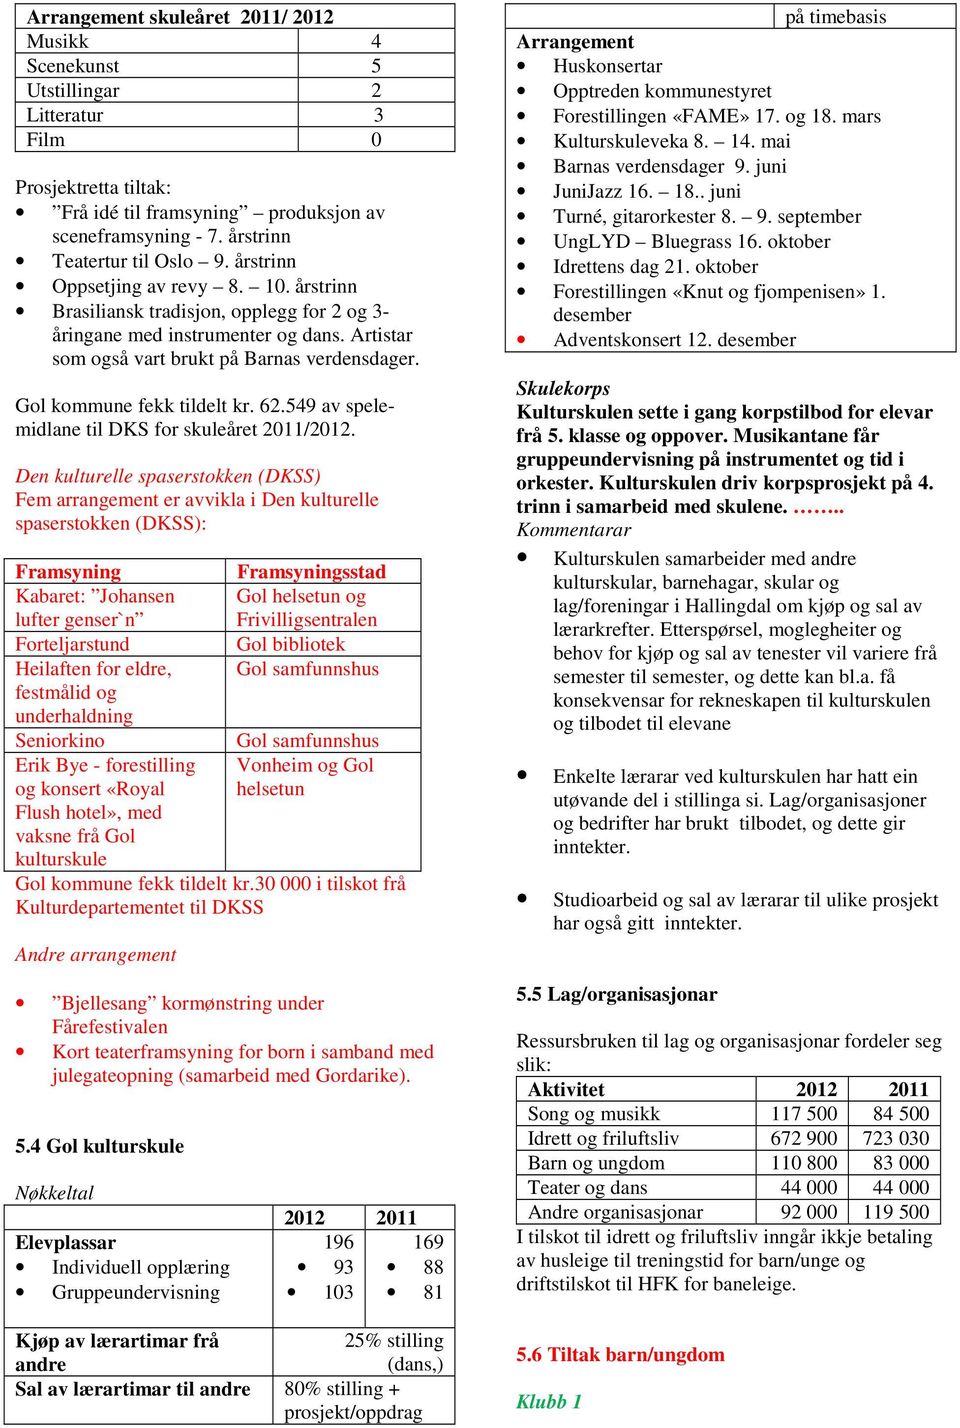 Gol kommune fekk tildelt kr. 62.549 av spelemidlane til DKS for skuleåret 2011/2012.